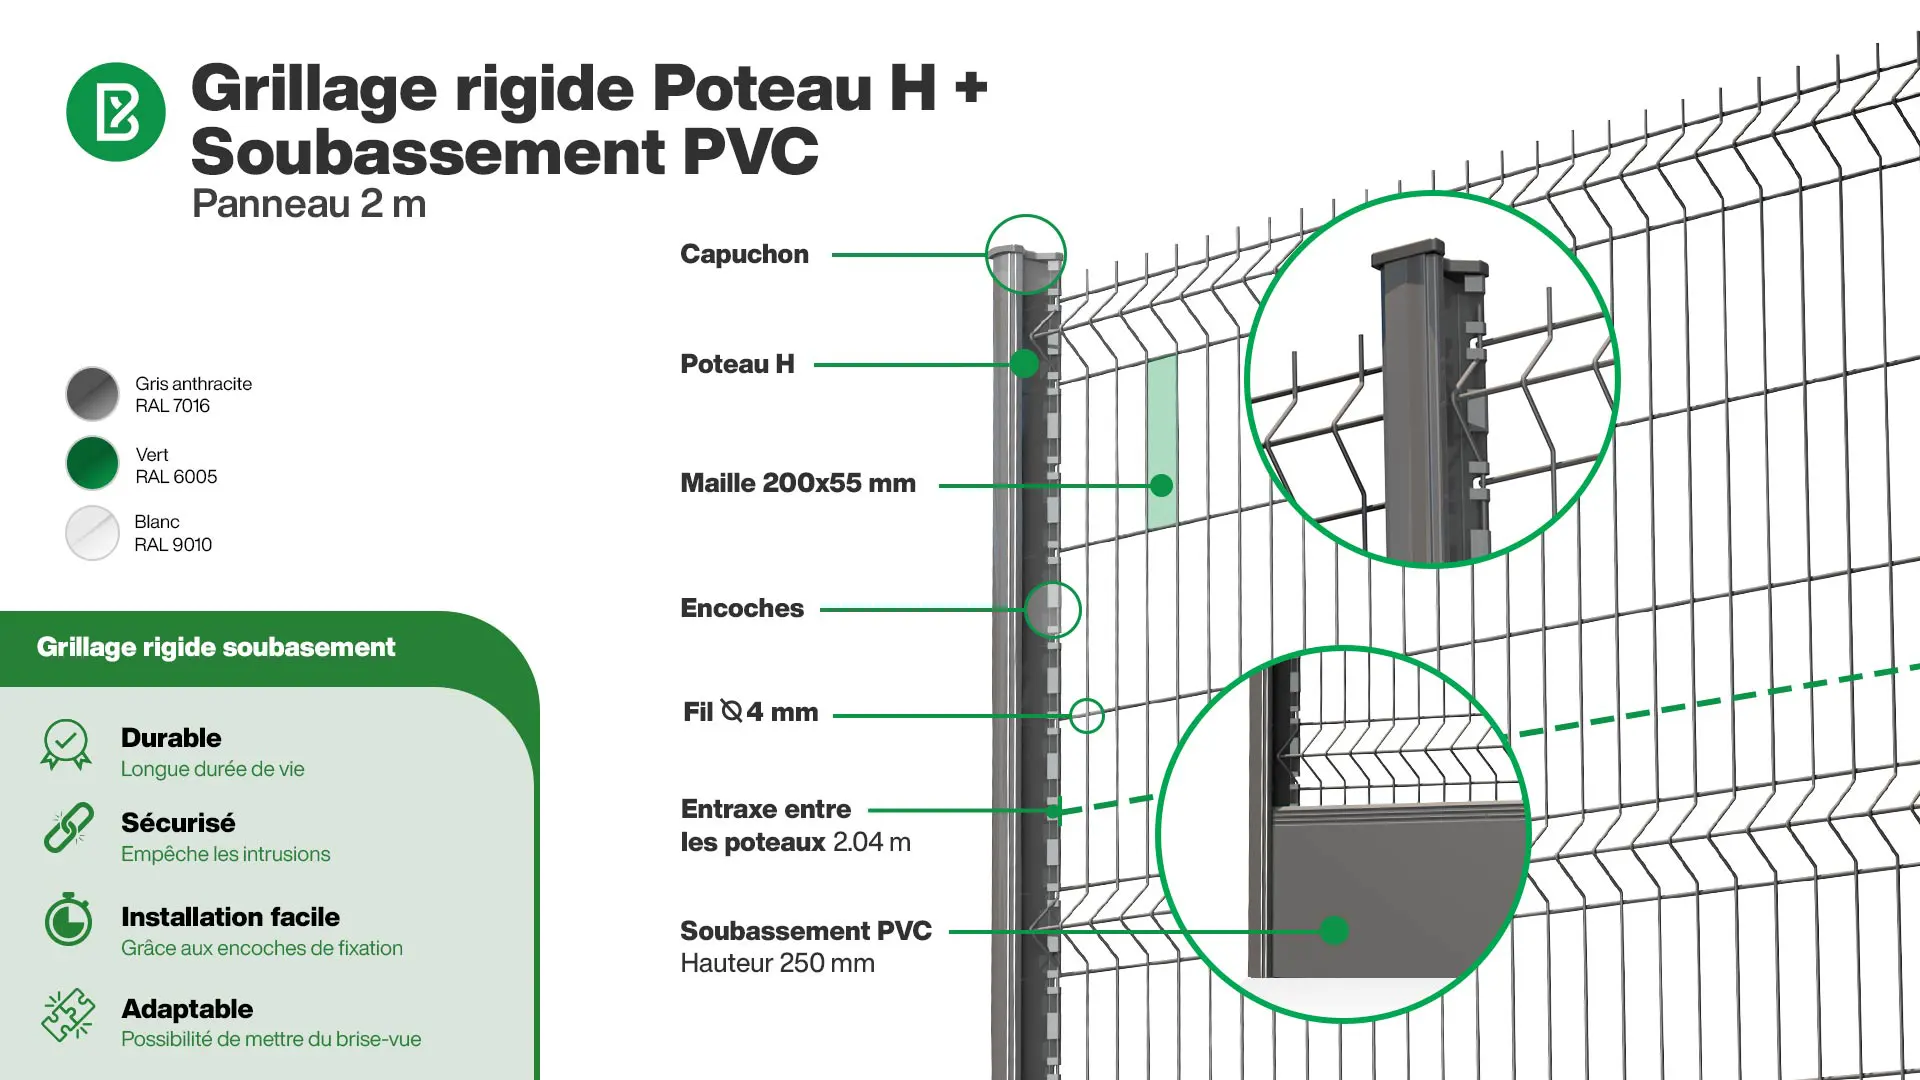 Grillage rigide : Infographie d'un kit de grillage rigide avec soubassement PVC